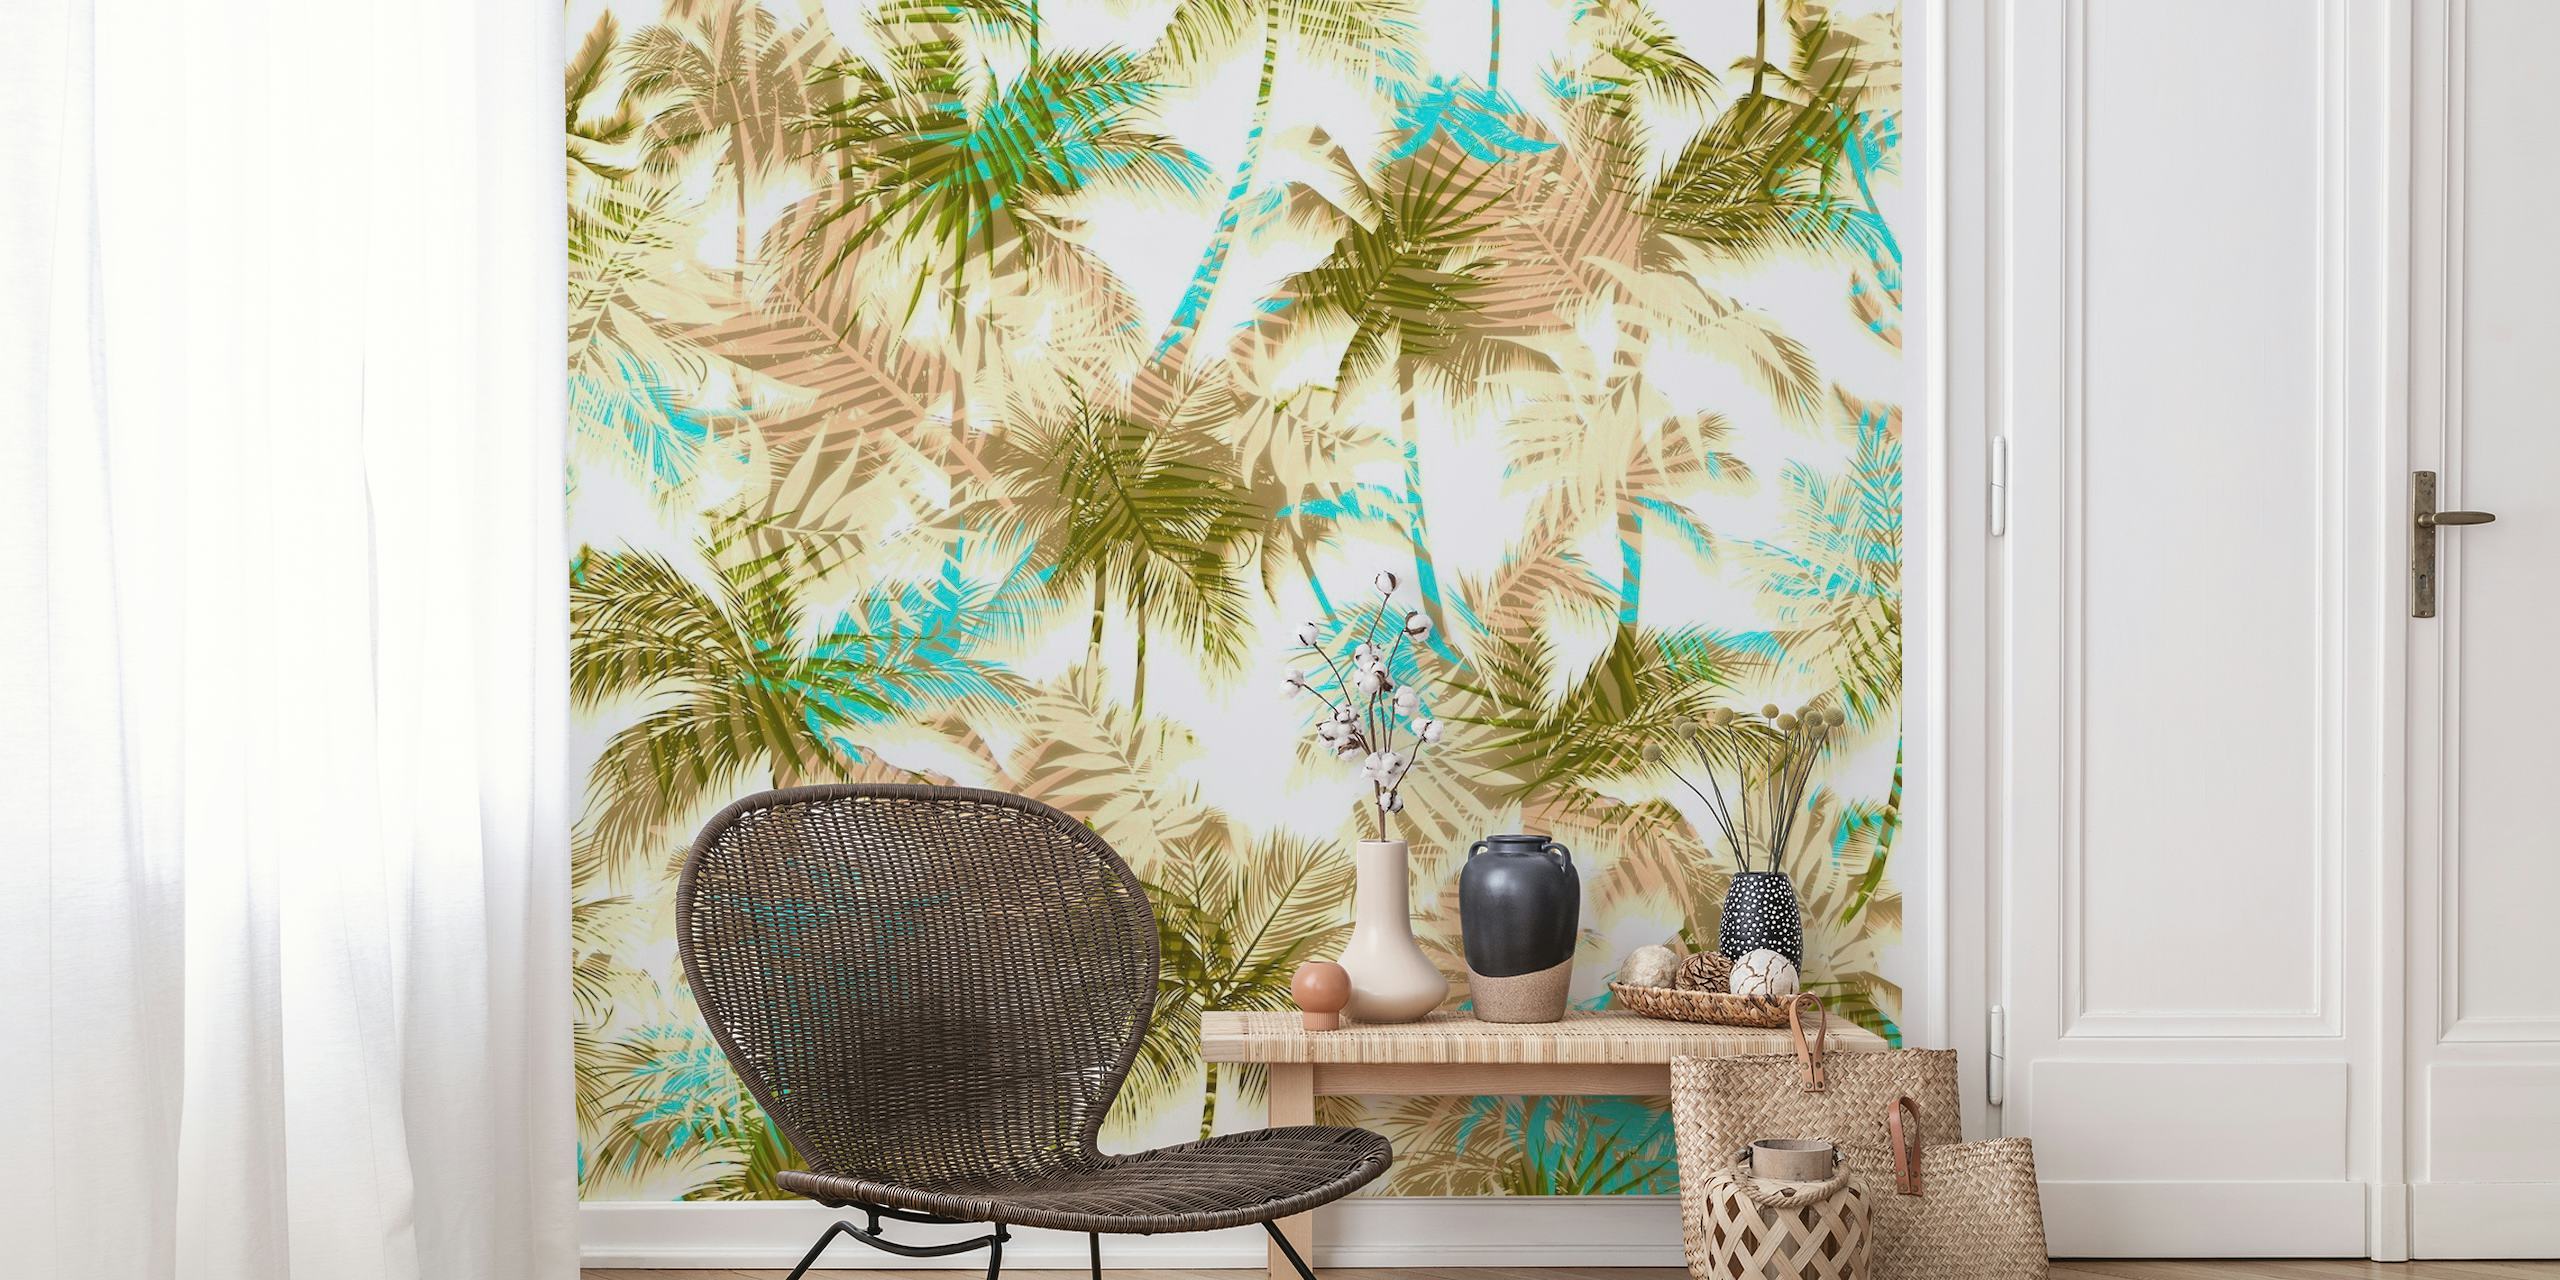 Abstracte bladpatronen vermengd met tropische palmbomen in zachte, gedempte tinten voor wanddecoratie